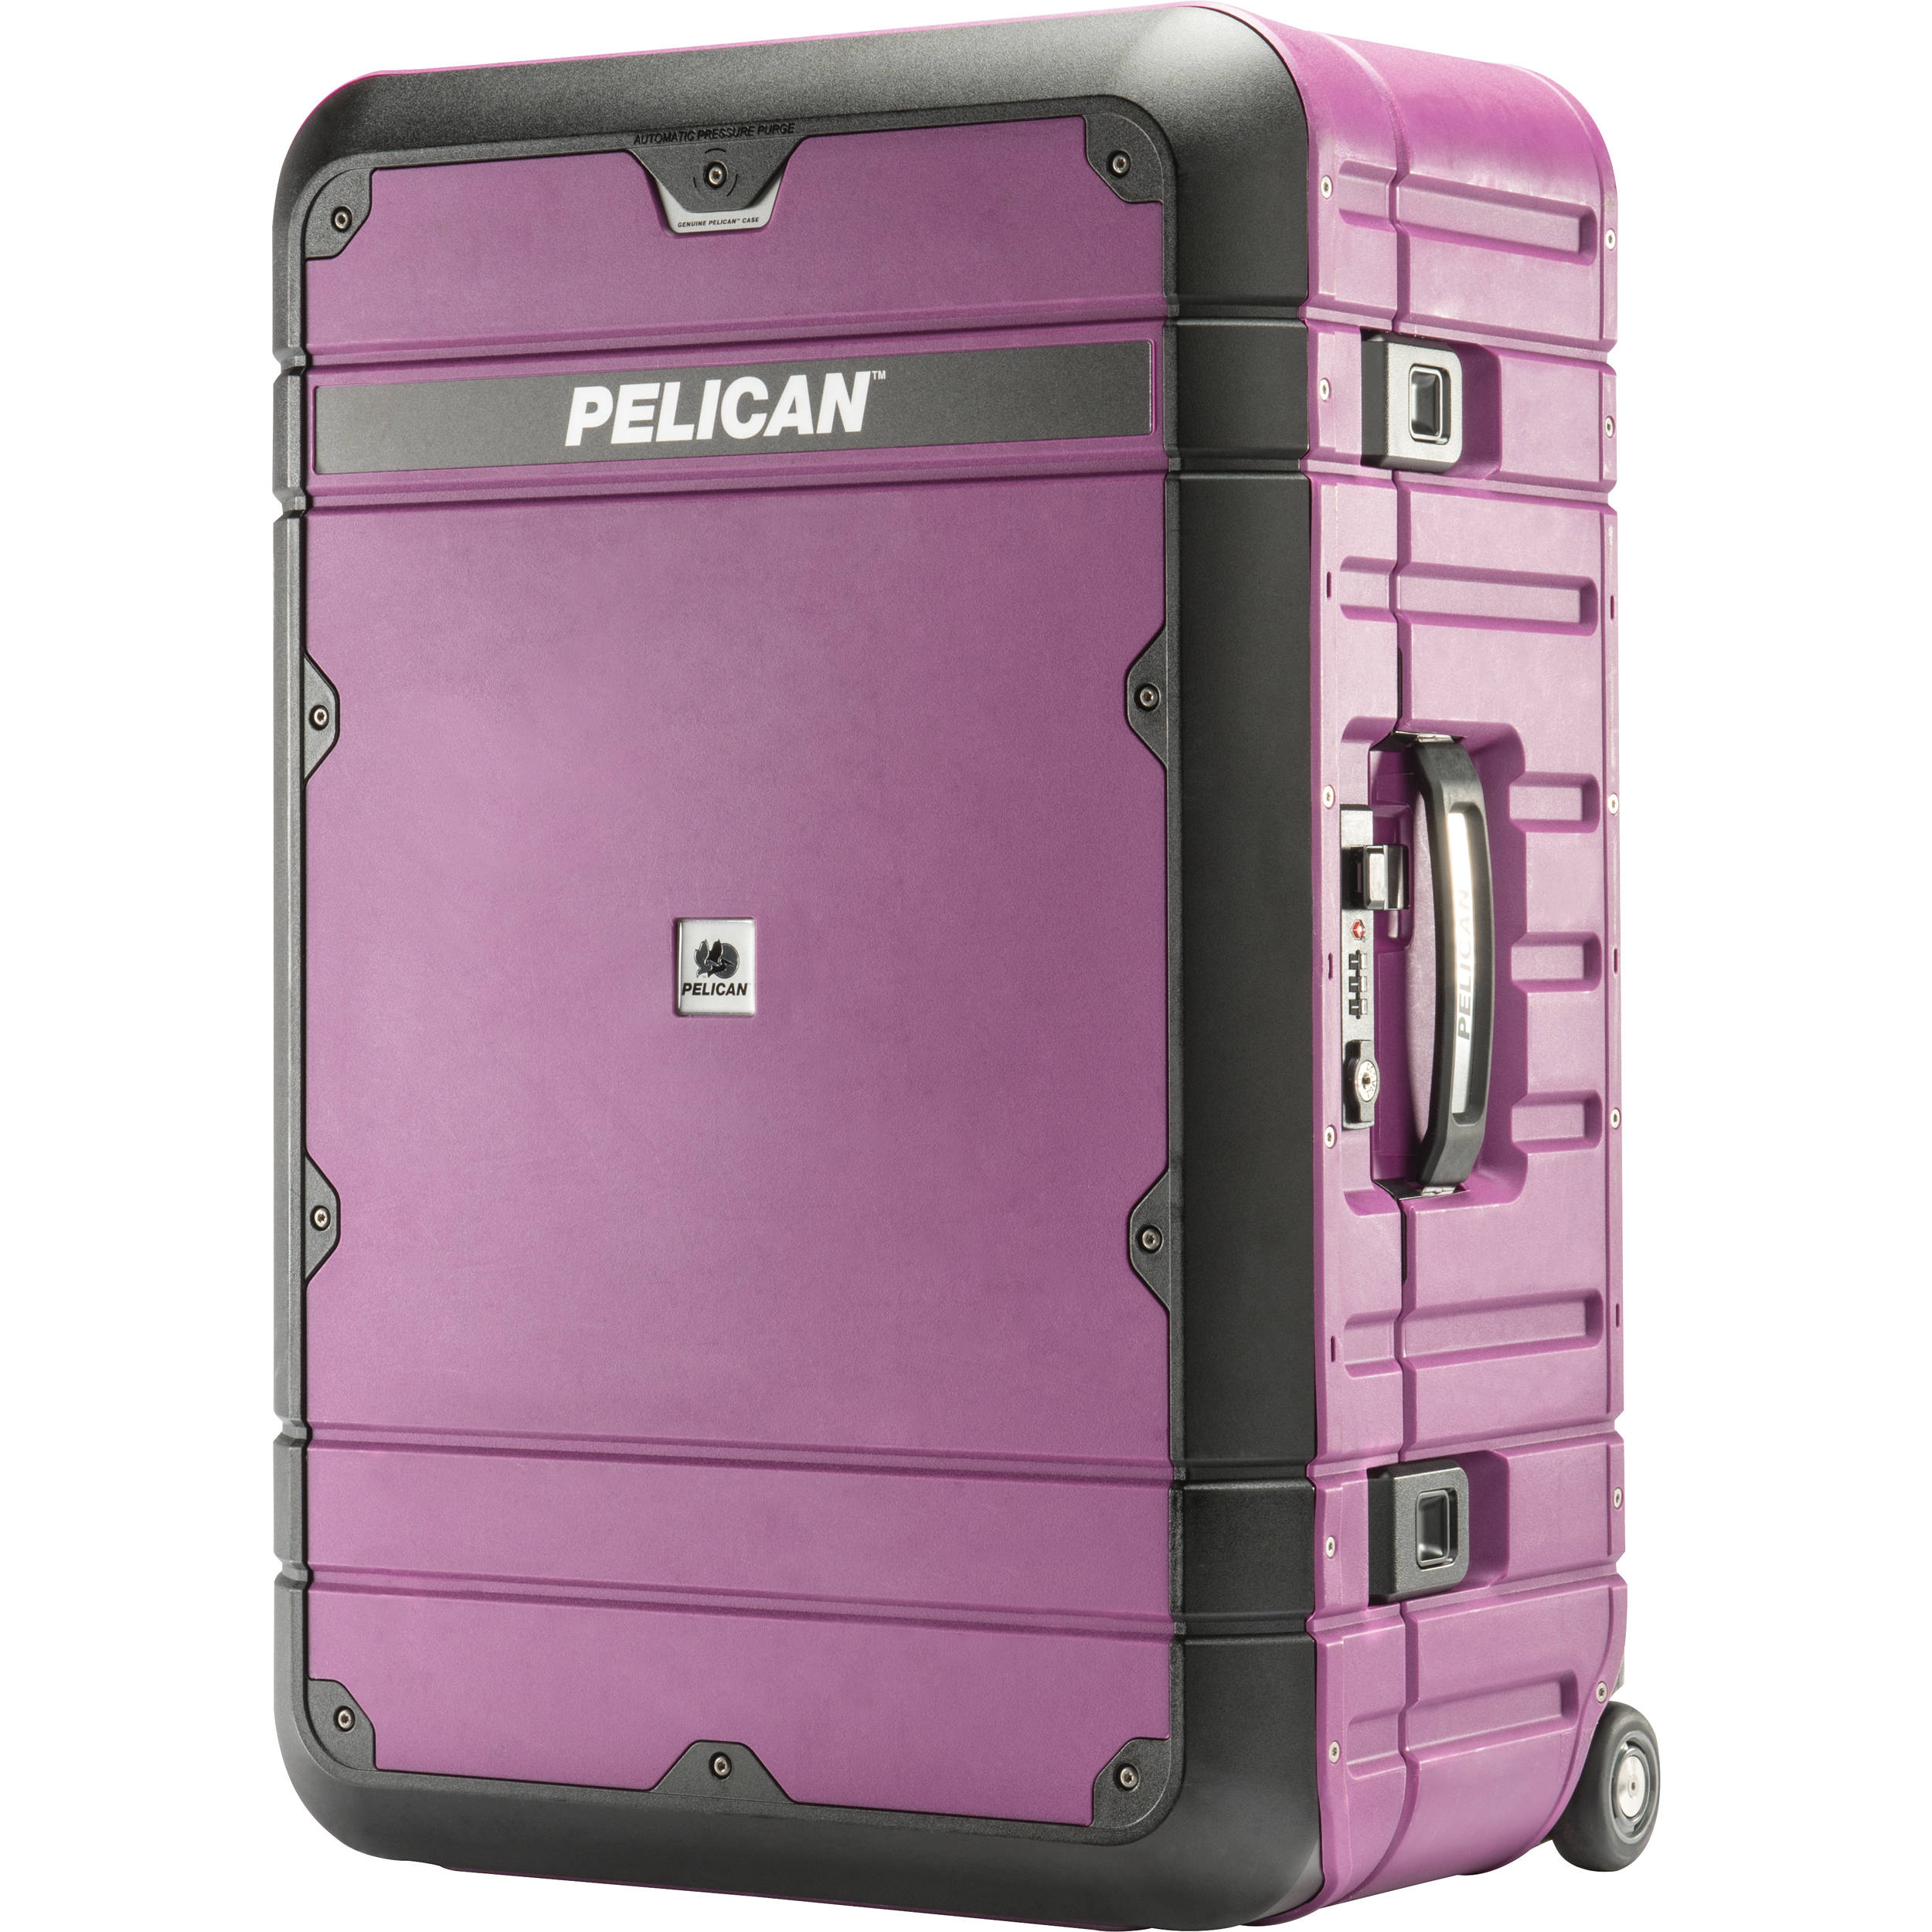 Pelican EL27 Elite Weekender Luggage with Enhanced Travel System  (Plum and Black)